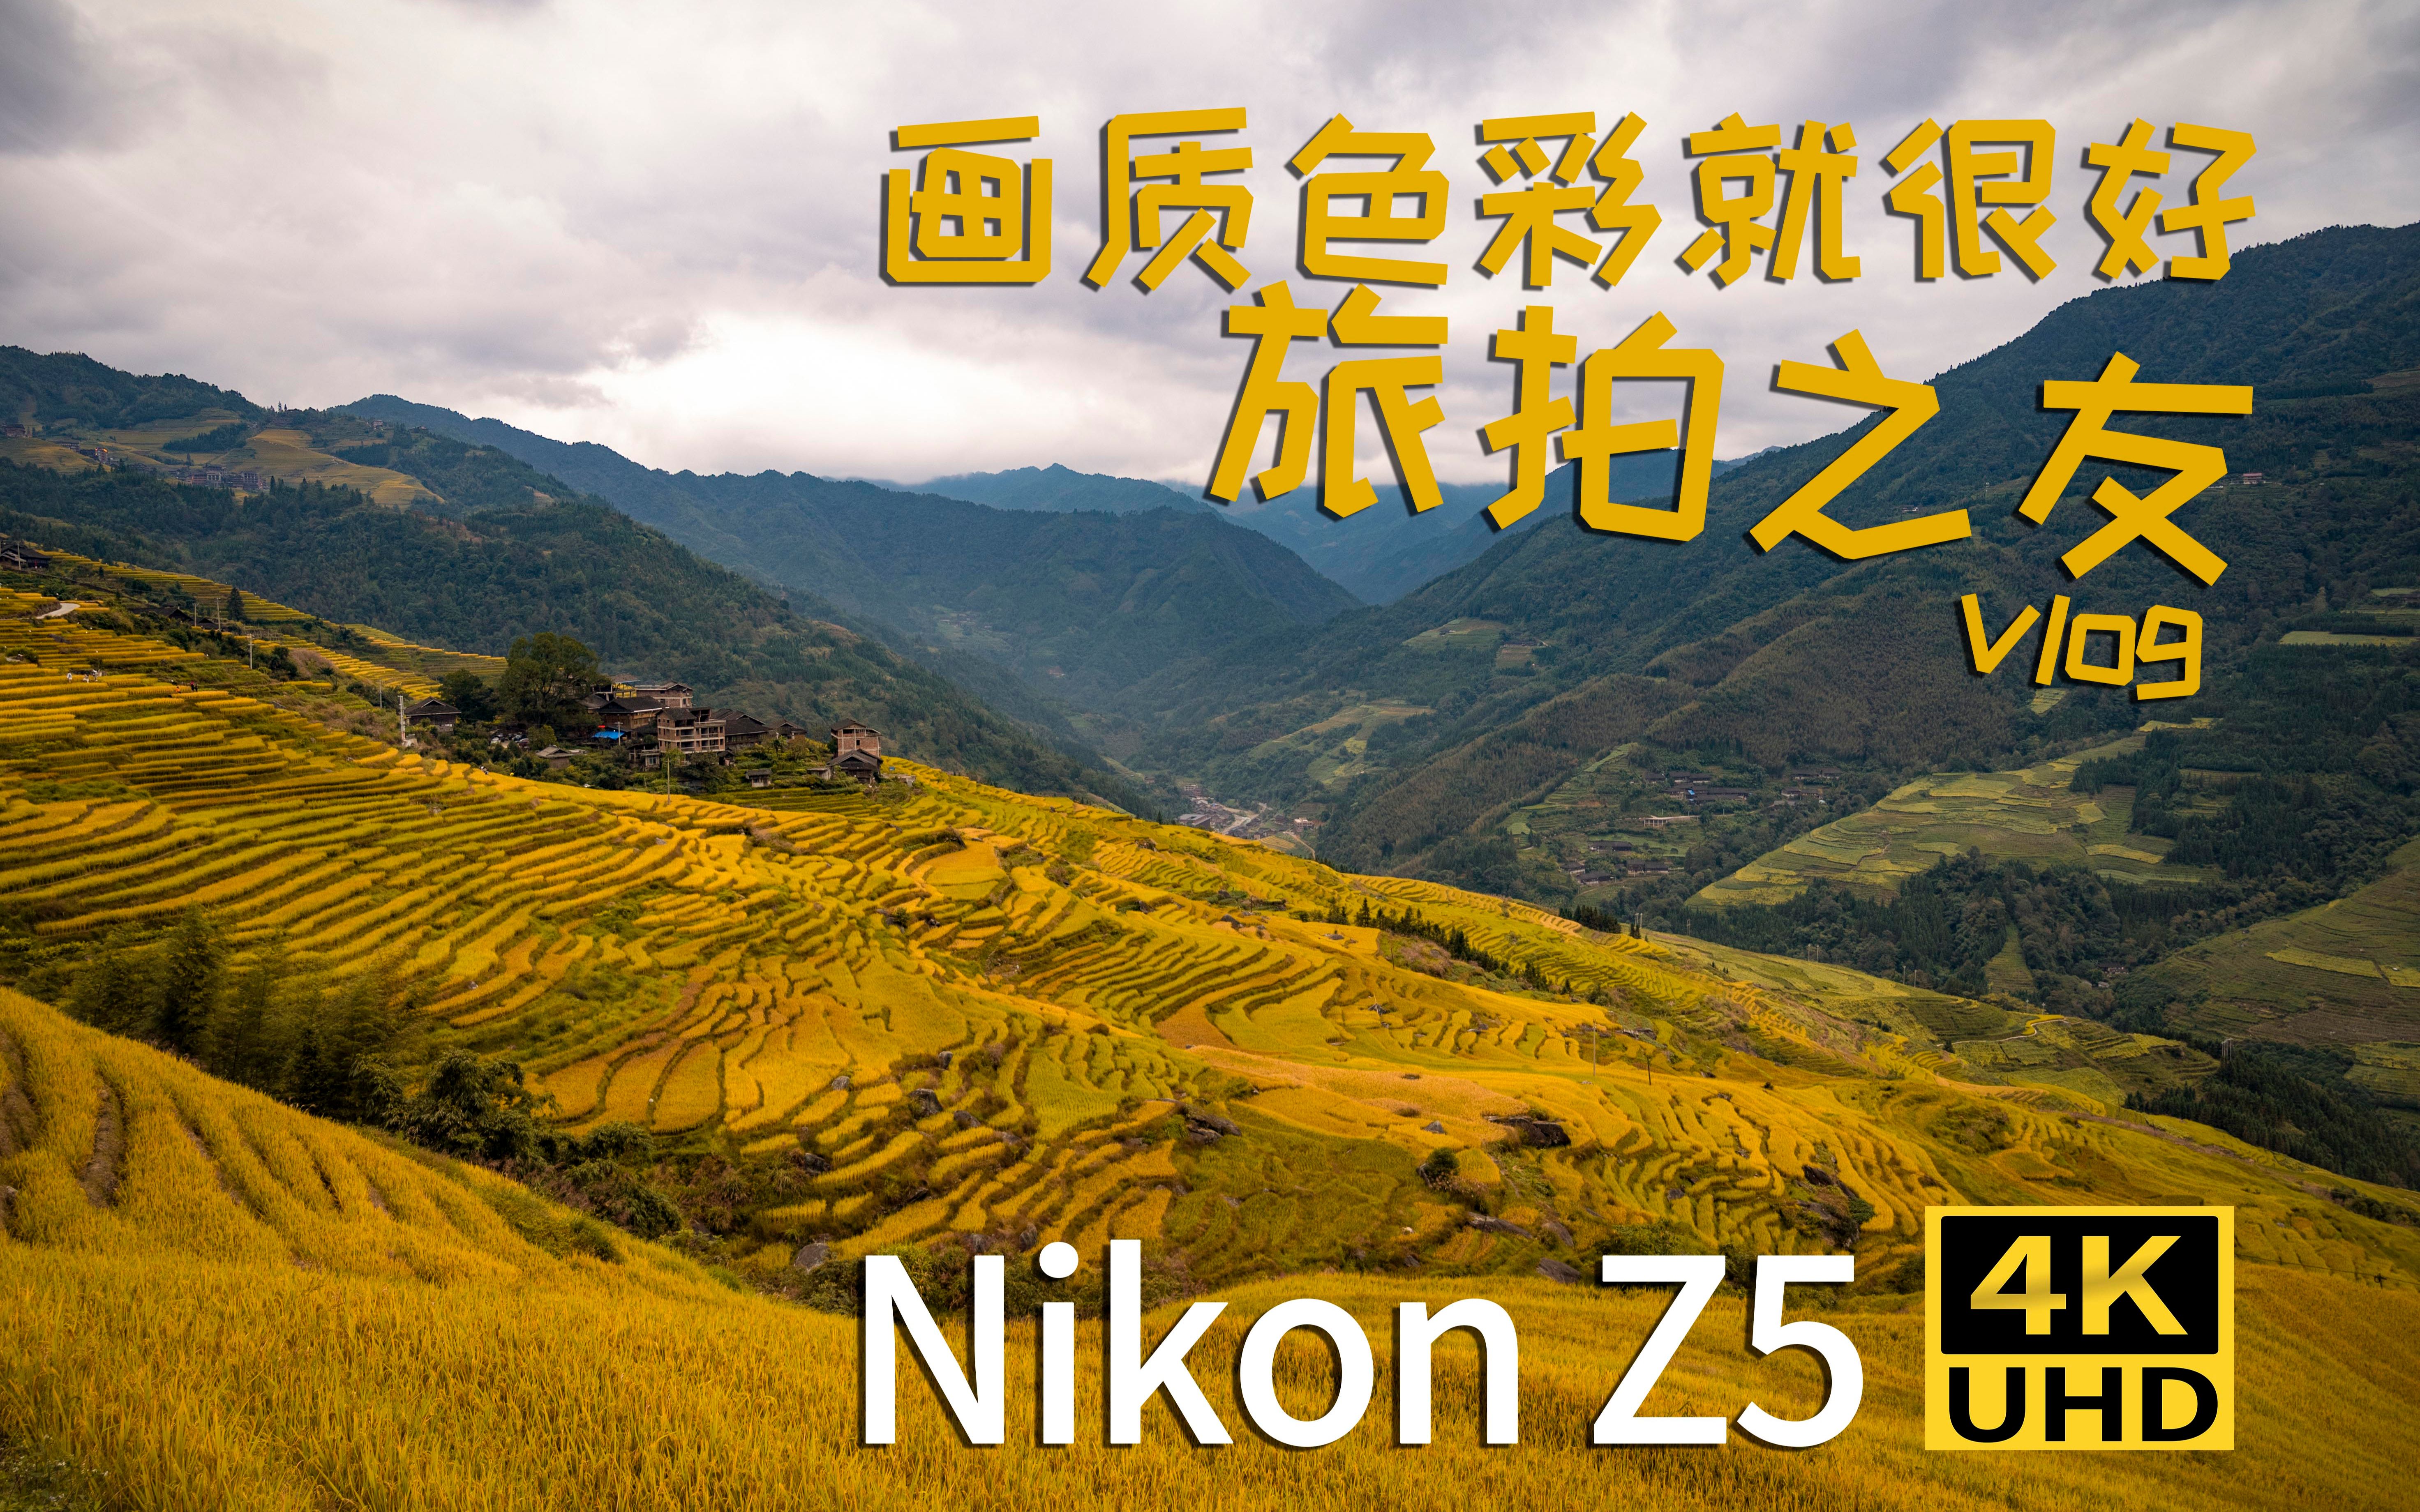 【尼康Nikon Z5】Z5果然是风景大师 龙脊梯田旅拍体验 挺赞